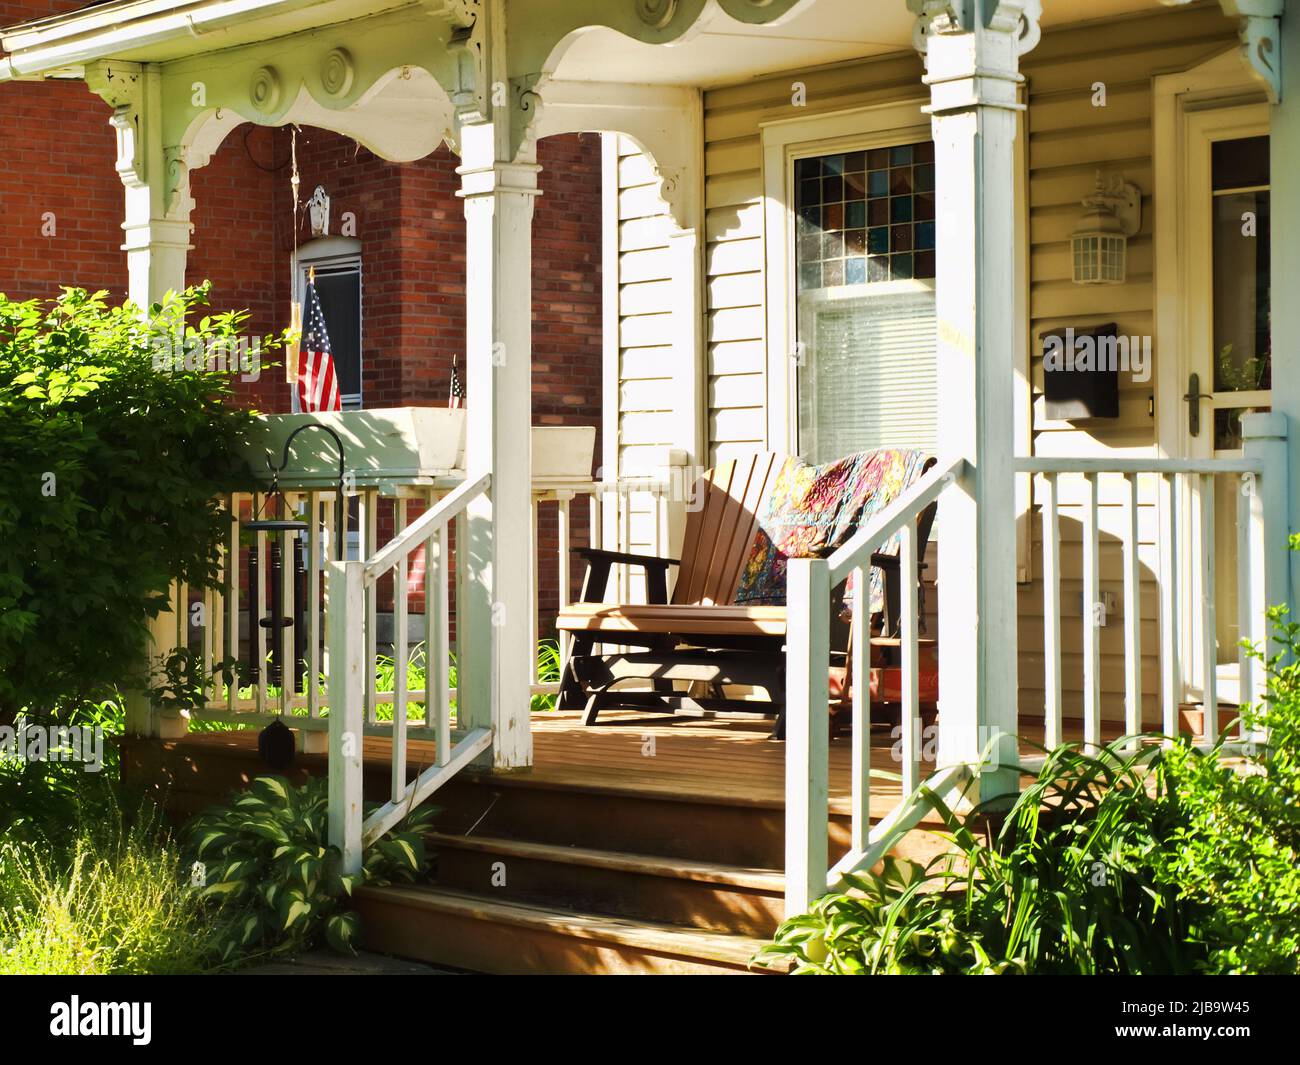 Pretty front porch in a small American village Stock Photo